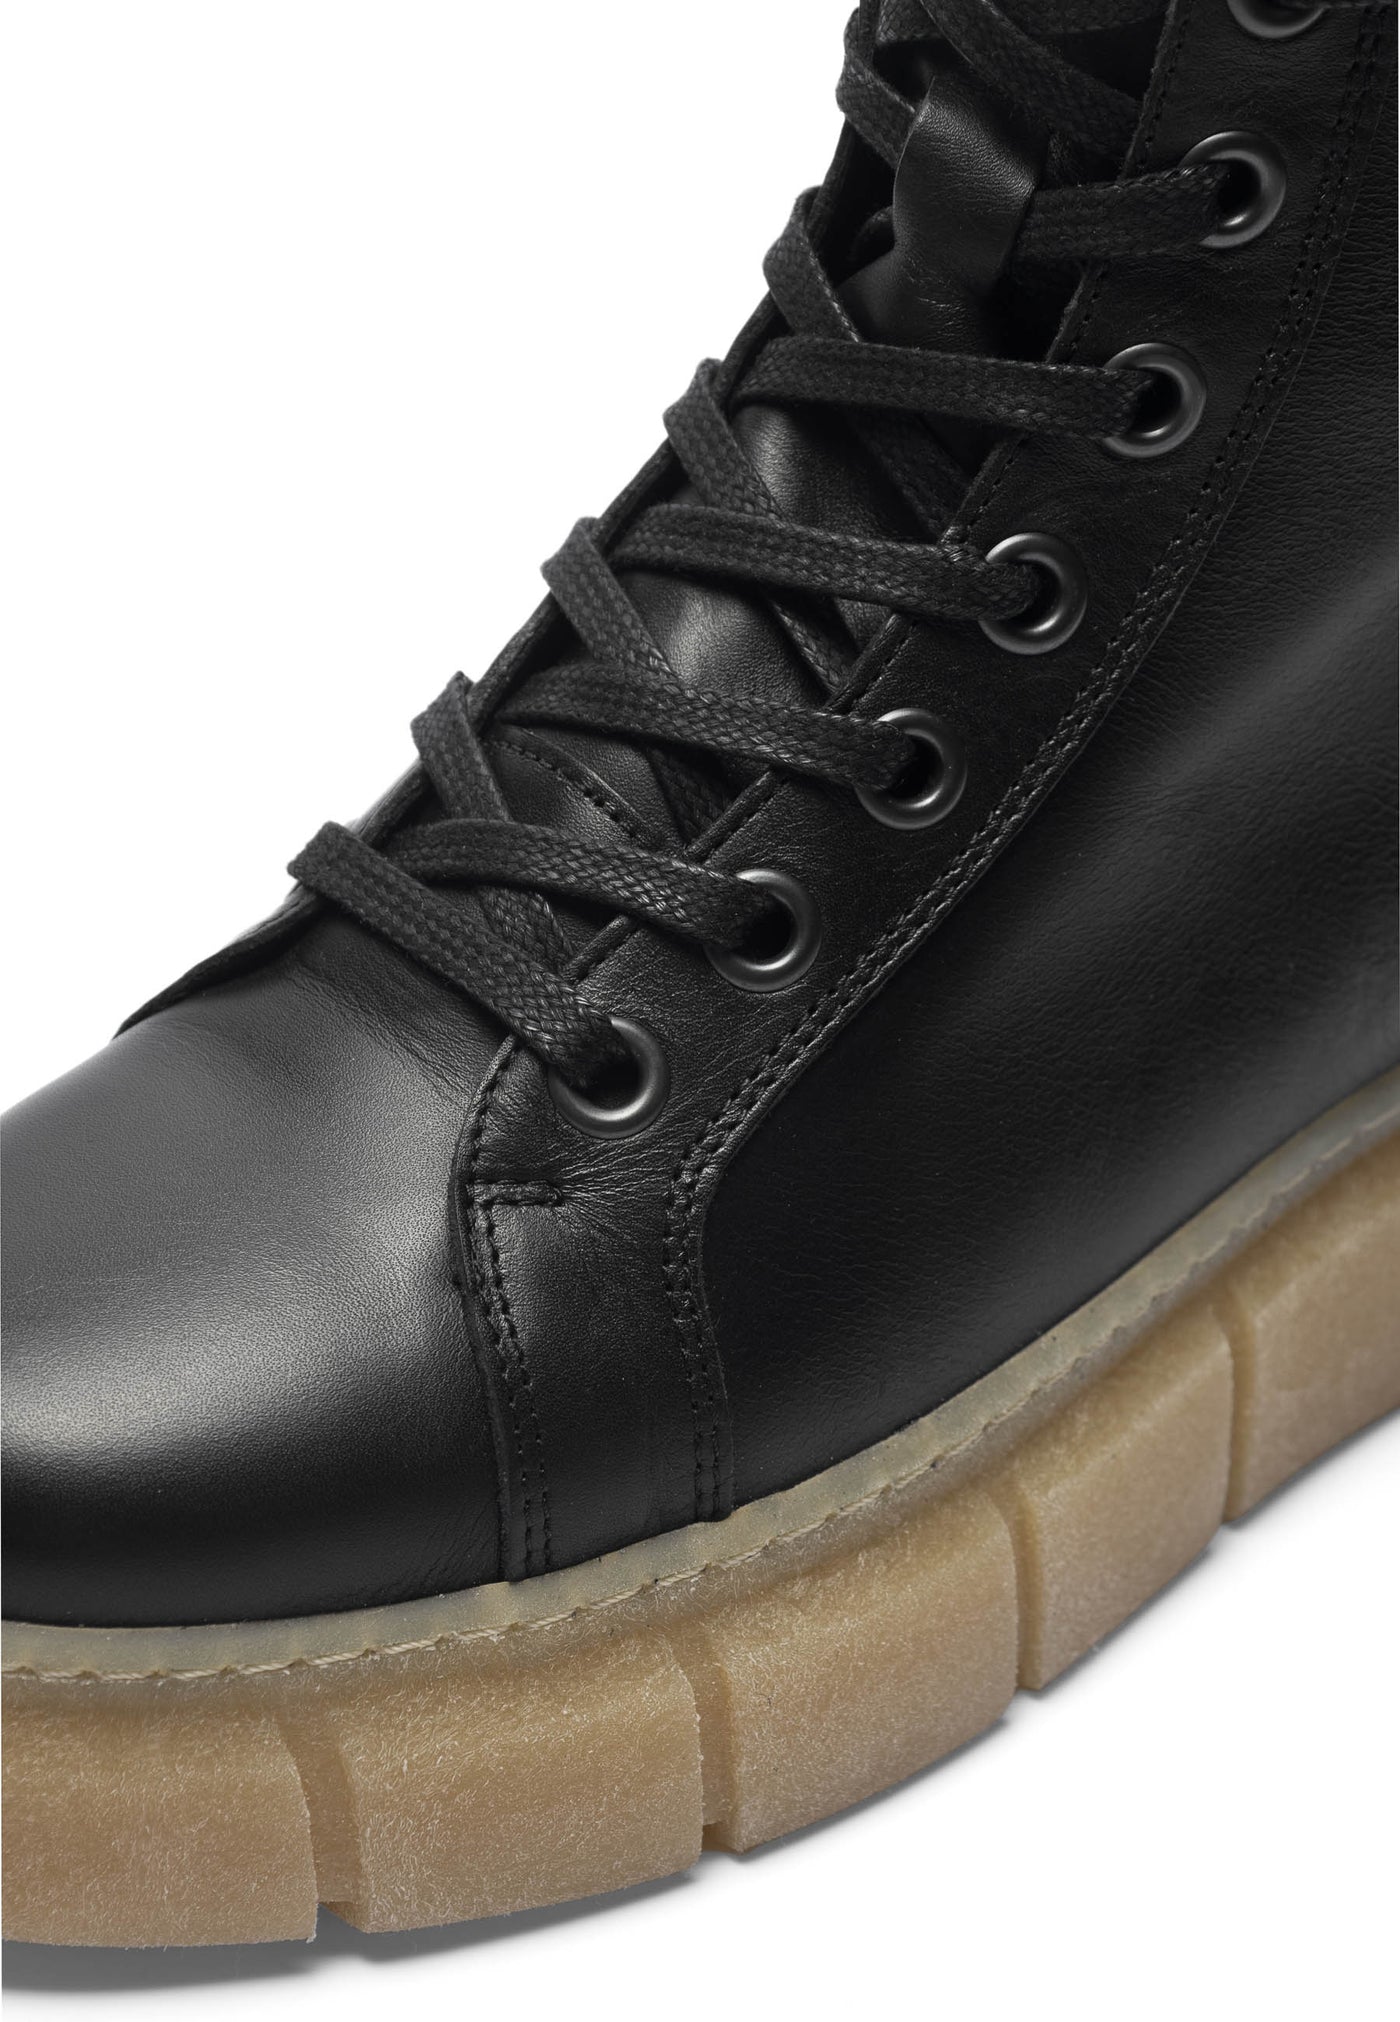 CASHOTT CASFLORA Lace Boot Leather Lace Up Black